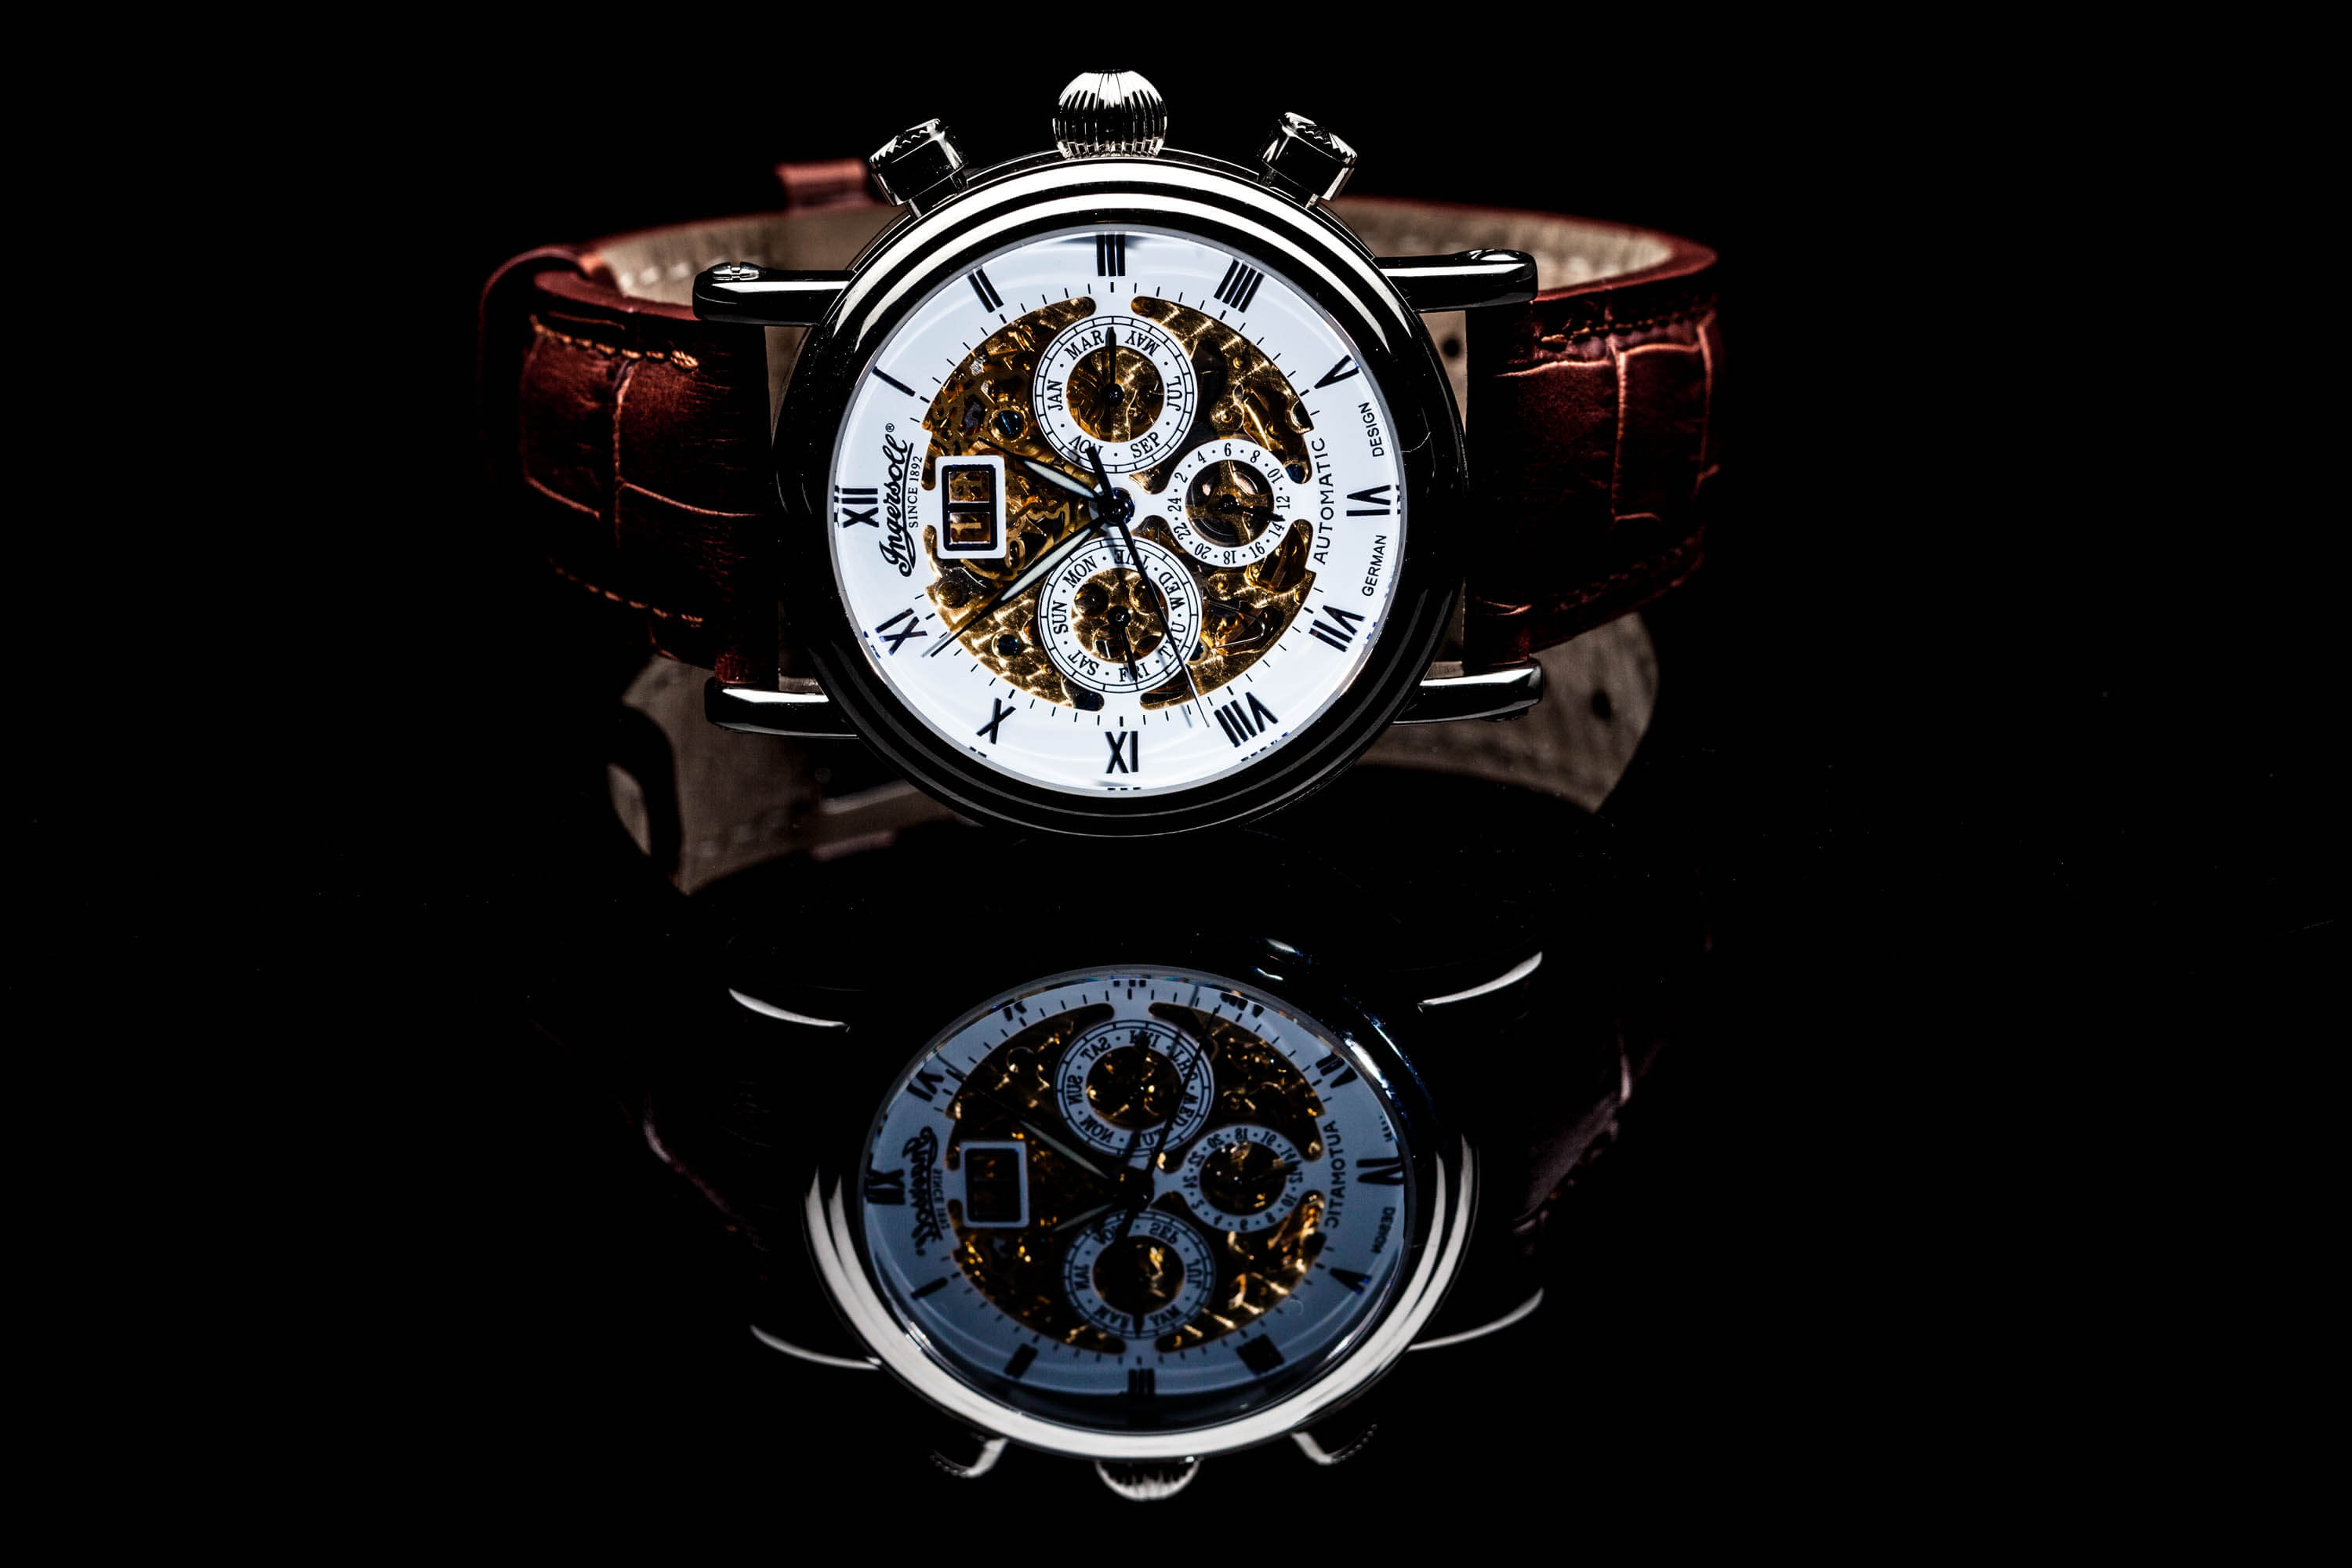 Hochwertige Armbanduhr vor schwarzem Hintergrund als Produktfoto